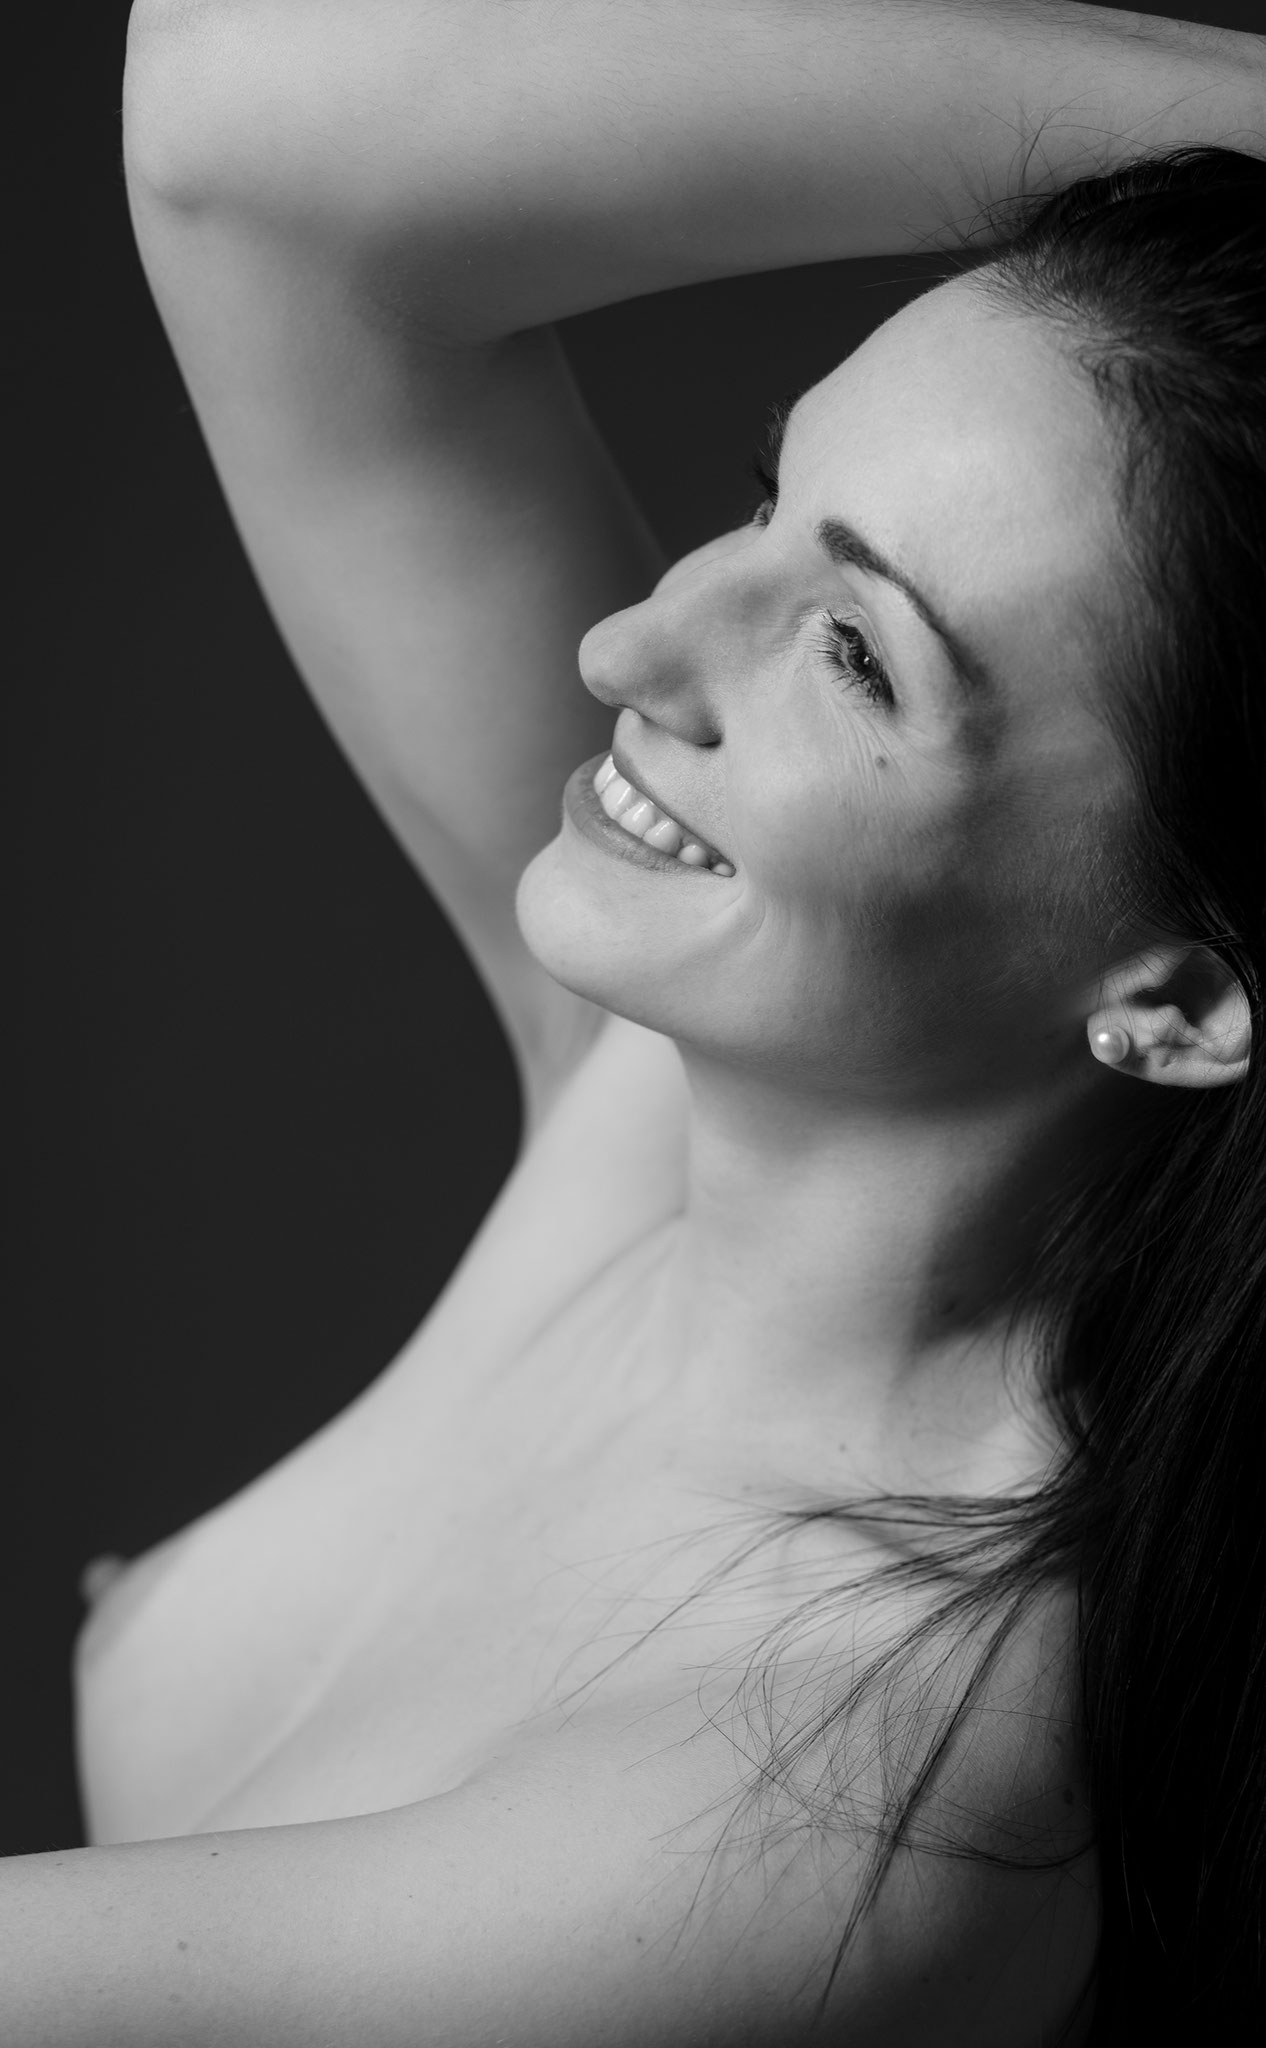 Süßes Lächeln und hübsche Brust - nackte Schönheit beim Aktshooting beim Fotorgafin Erlangen  #akt #aktfoto #nudephotography